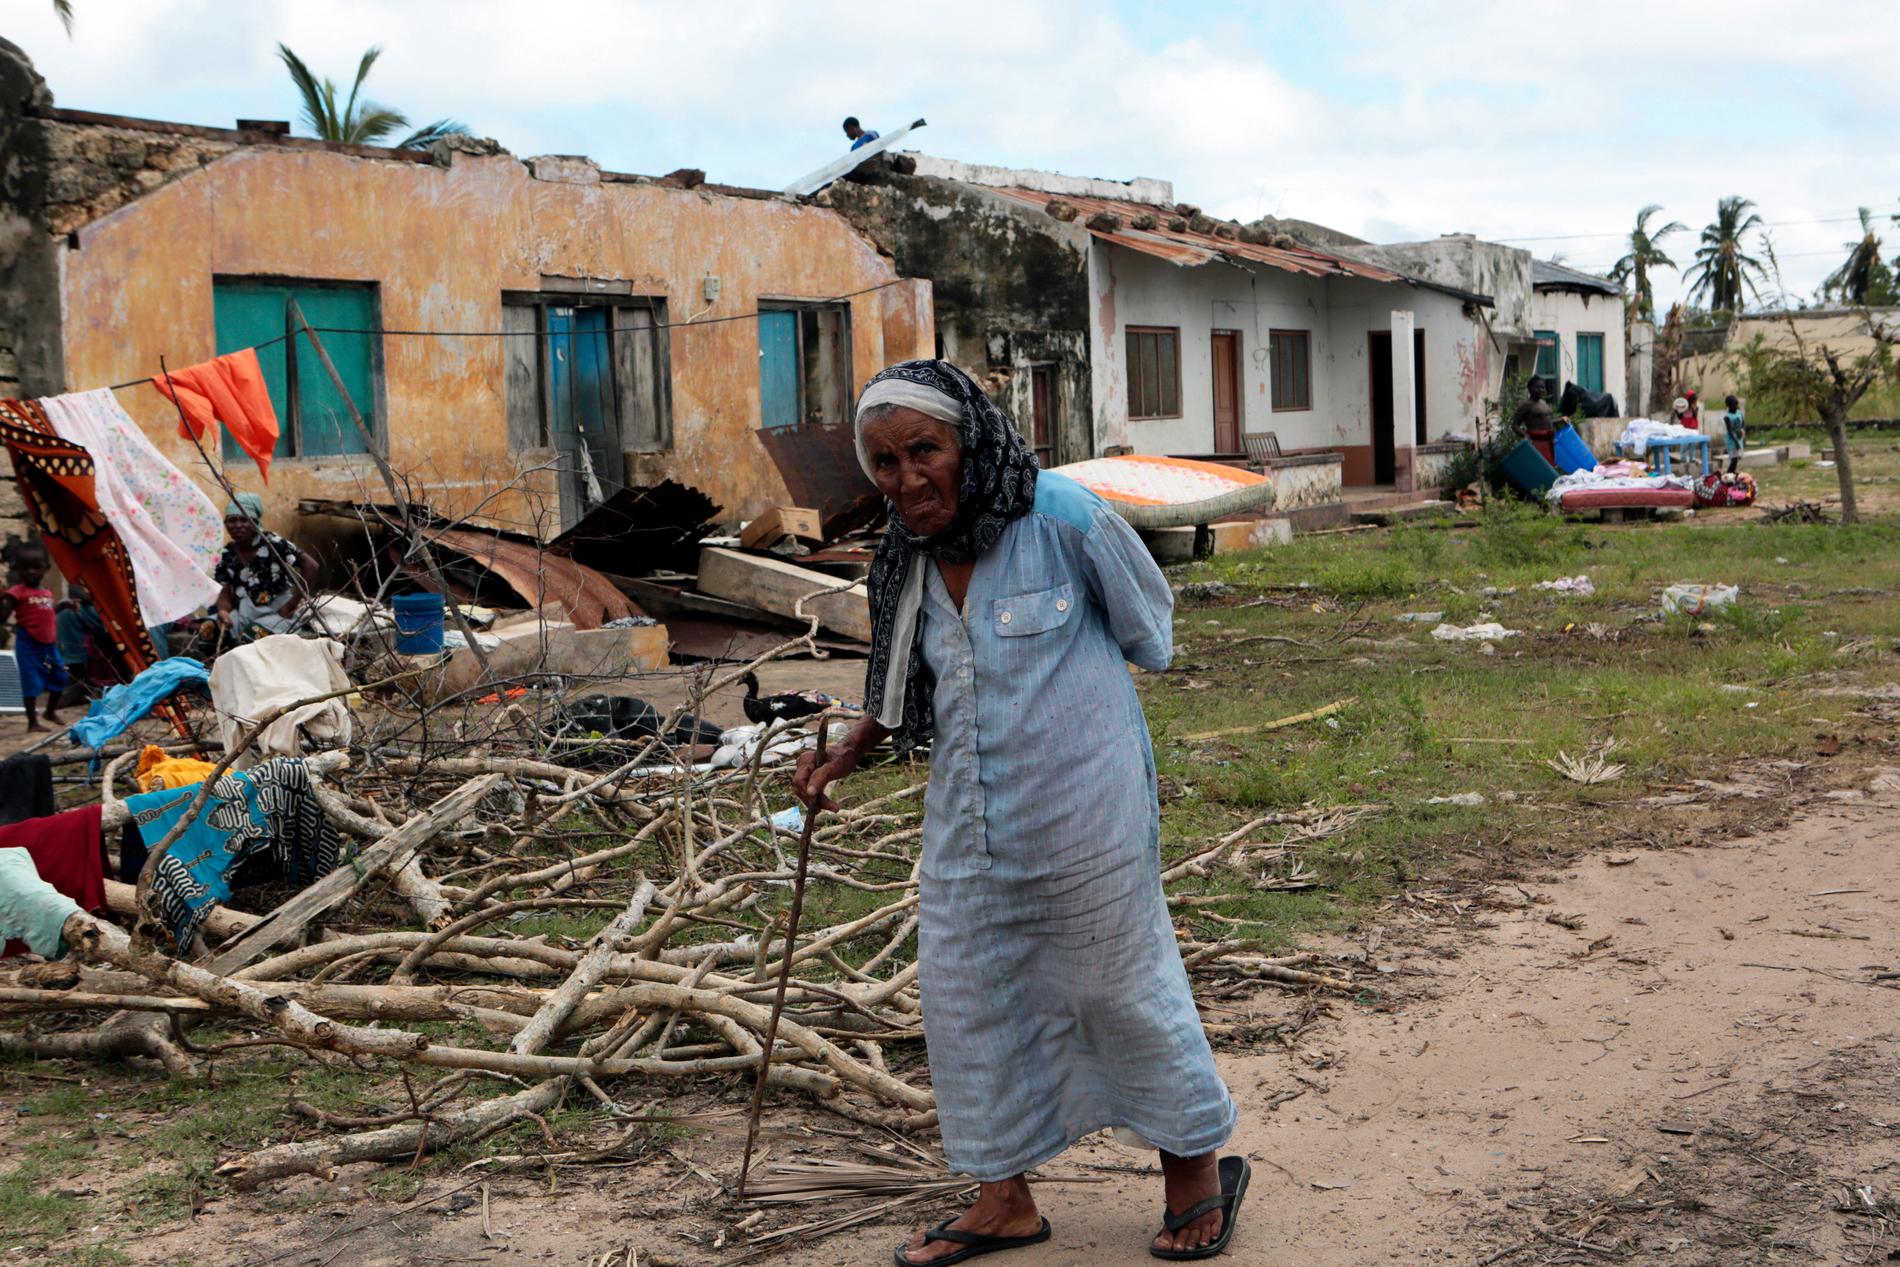 Cyklonen Kenneth, som skakade södra Afrika i april 2019, slog till bara kort efter en annan cyklon, kallad Idai. Bara i Moçambique försatte Idai omkring 400 000 människor på flykt.